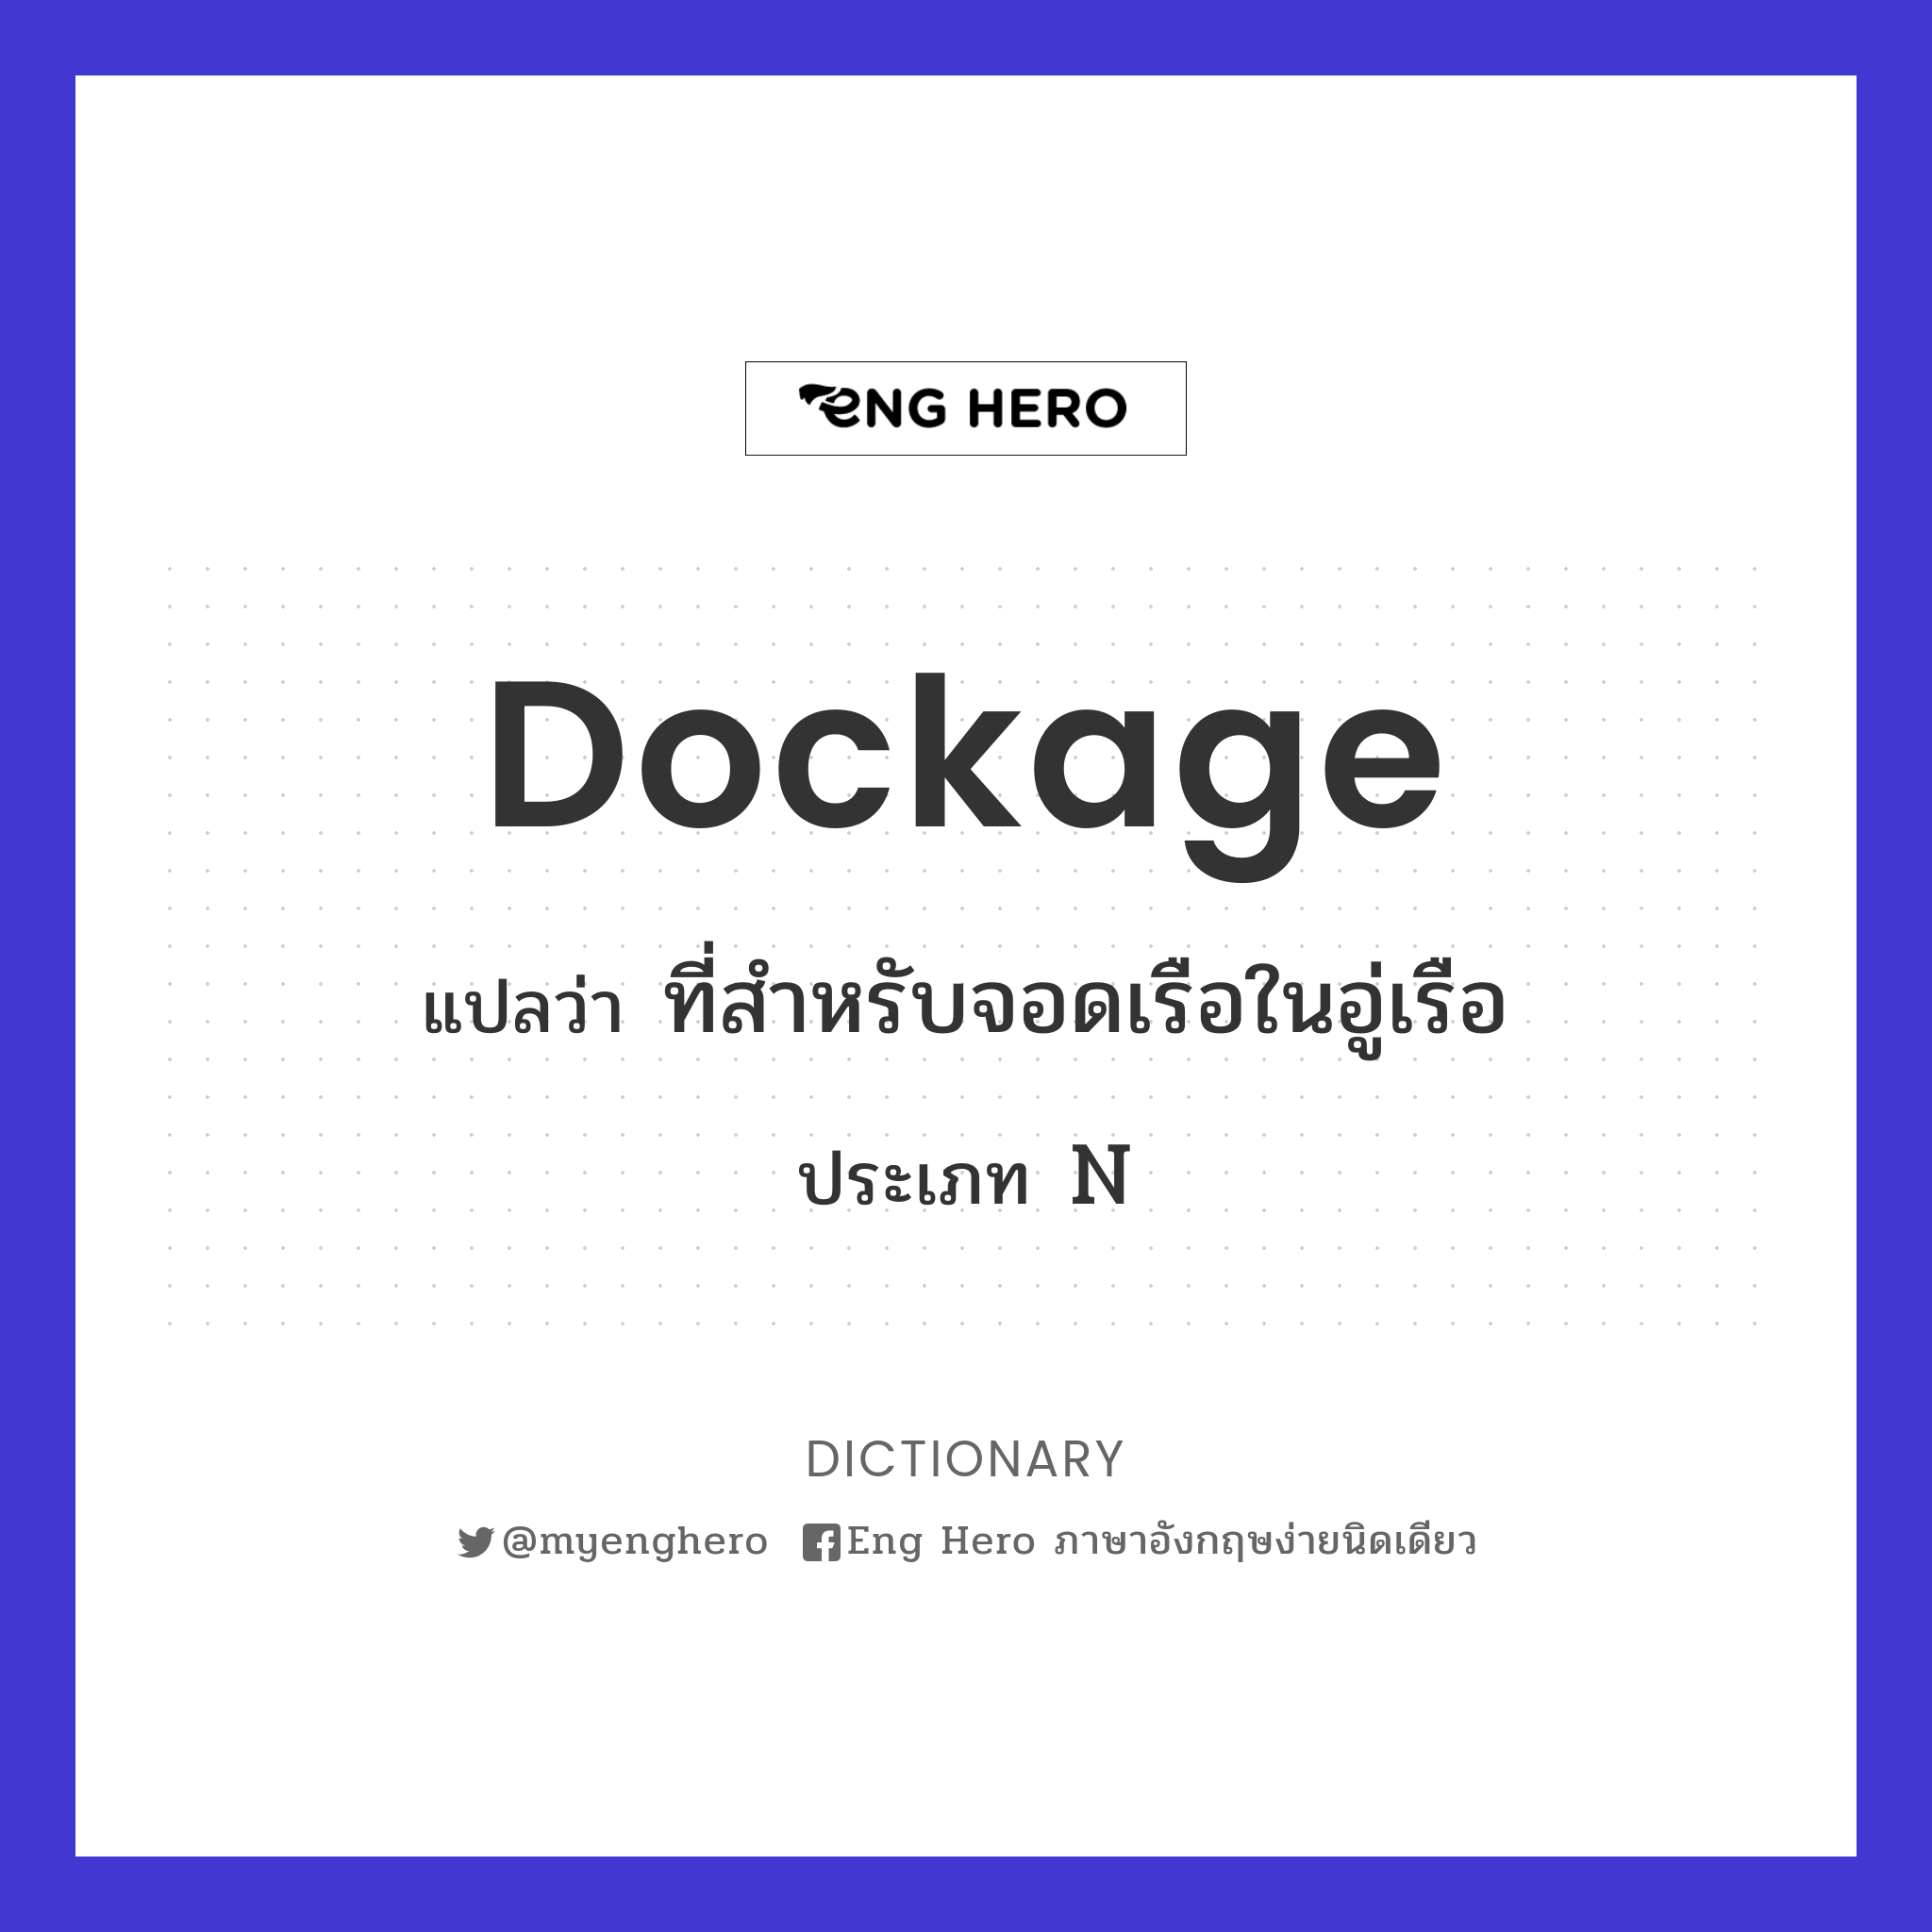 dockage